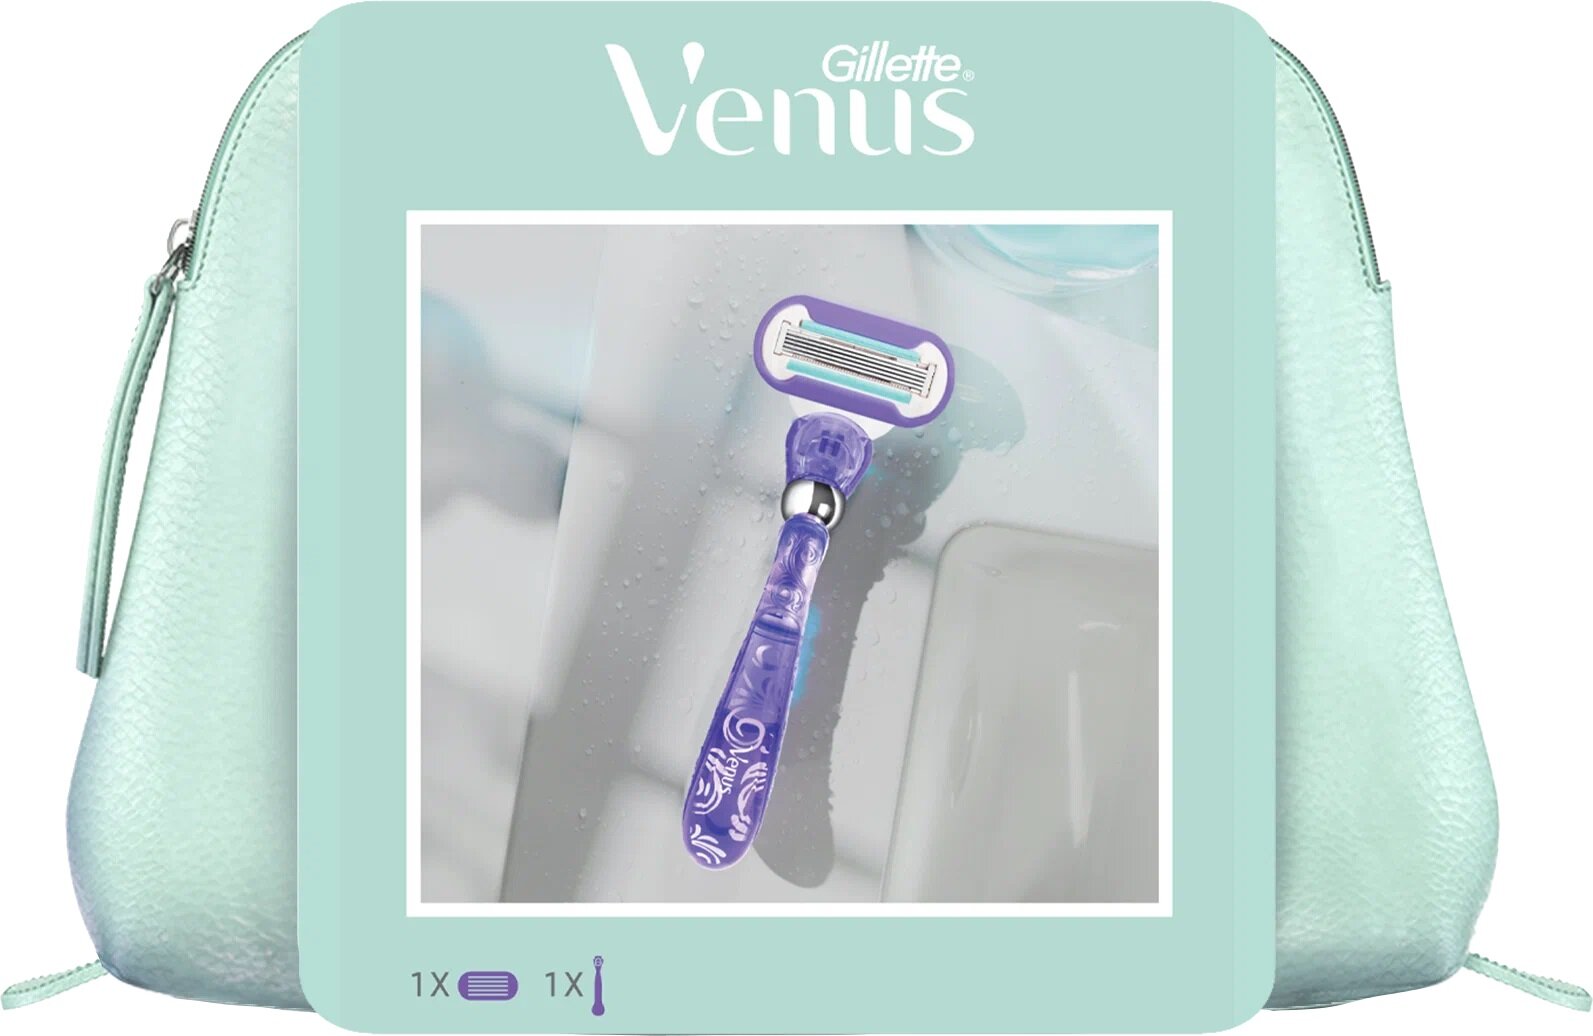 Venus Набор Подарочный набор женская бритва Gillette Venus Swirl с 1 сменной кассетой и косметичкой Venus